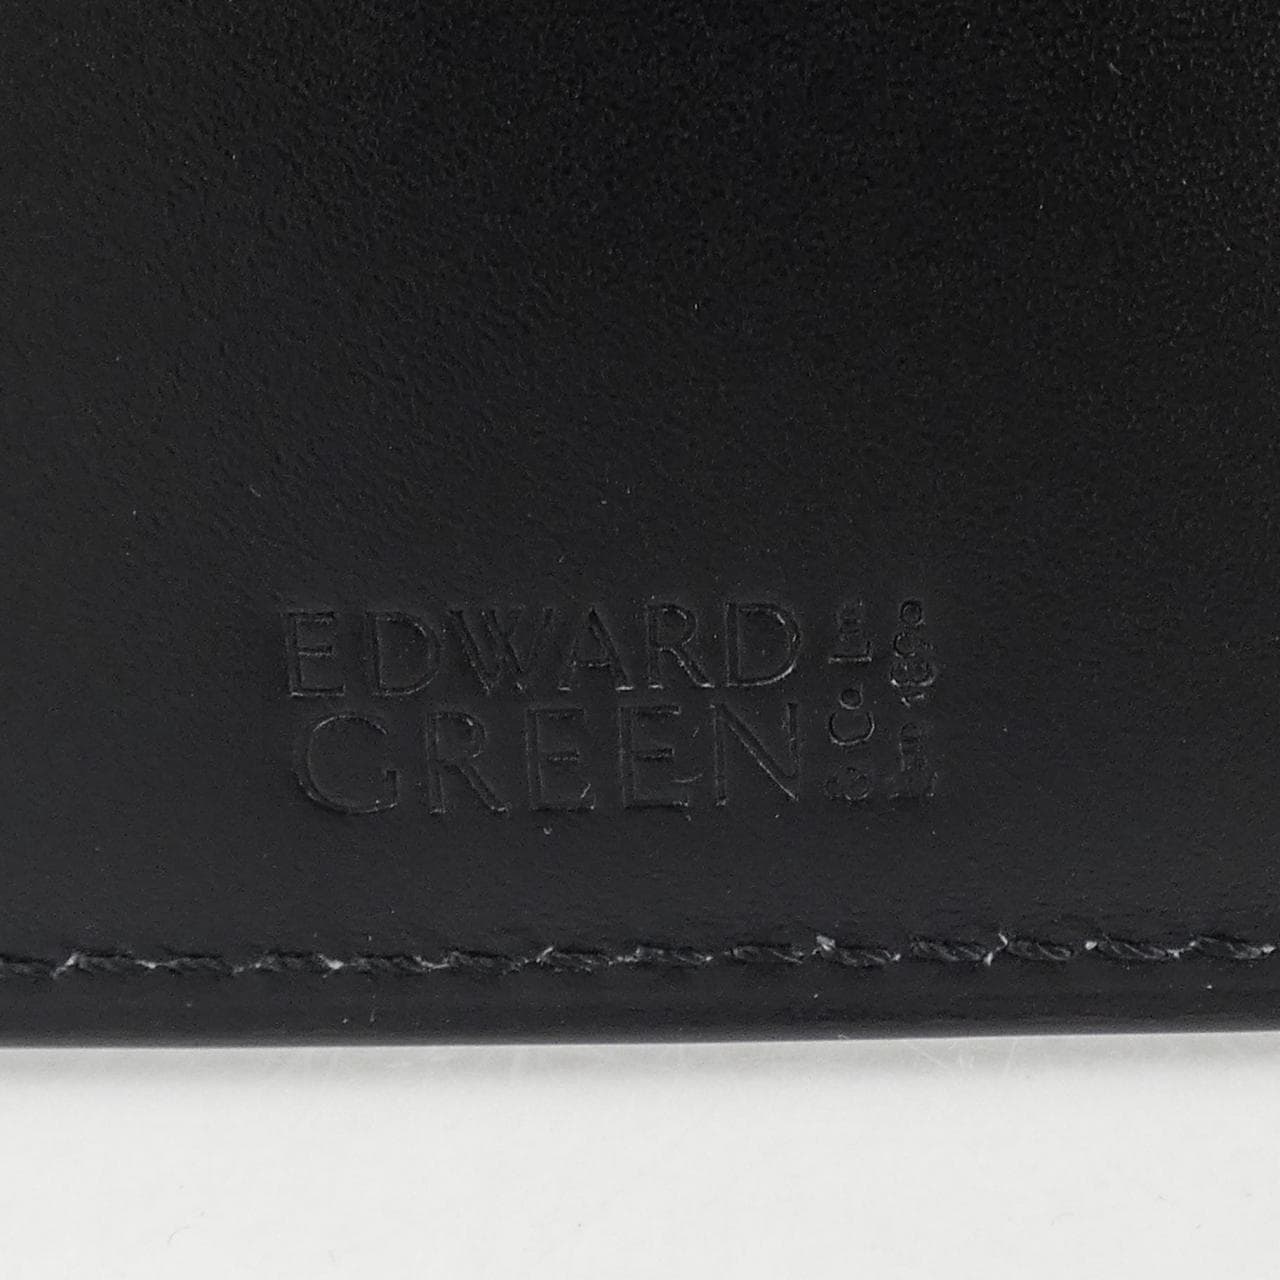 爱德华绿EDWARD GREEN CARD CASE